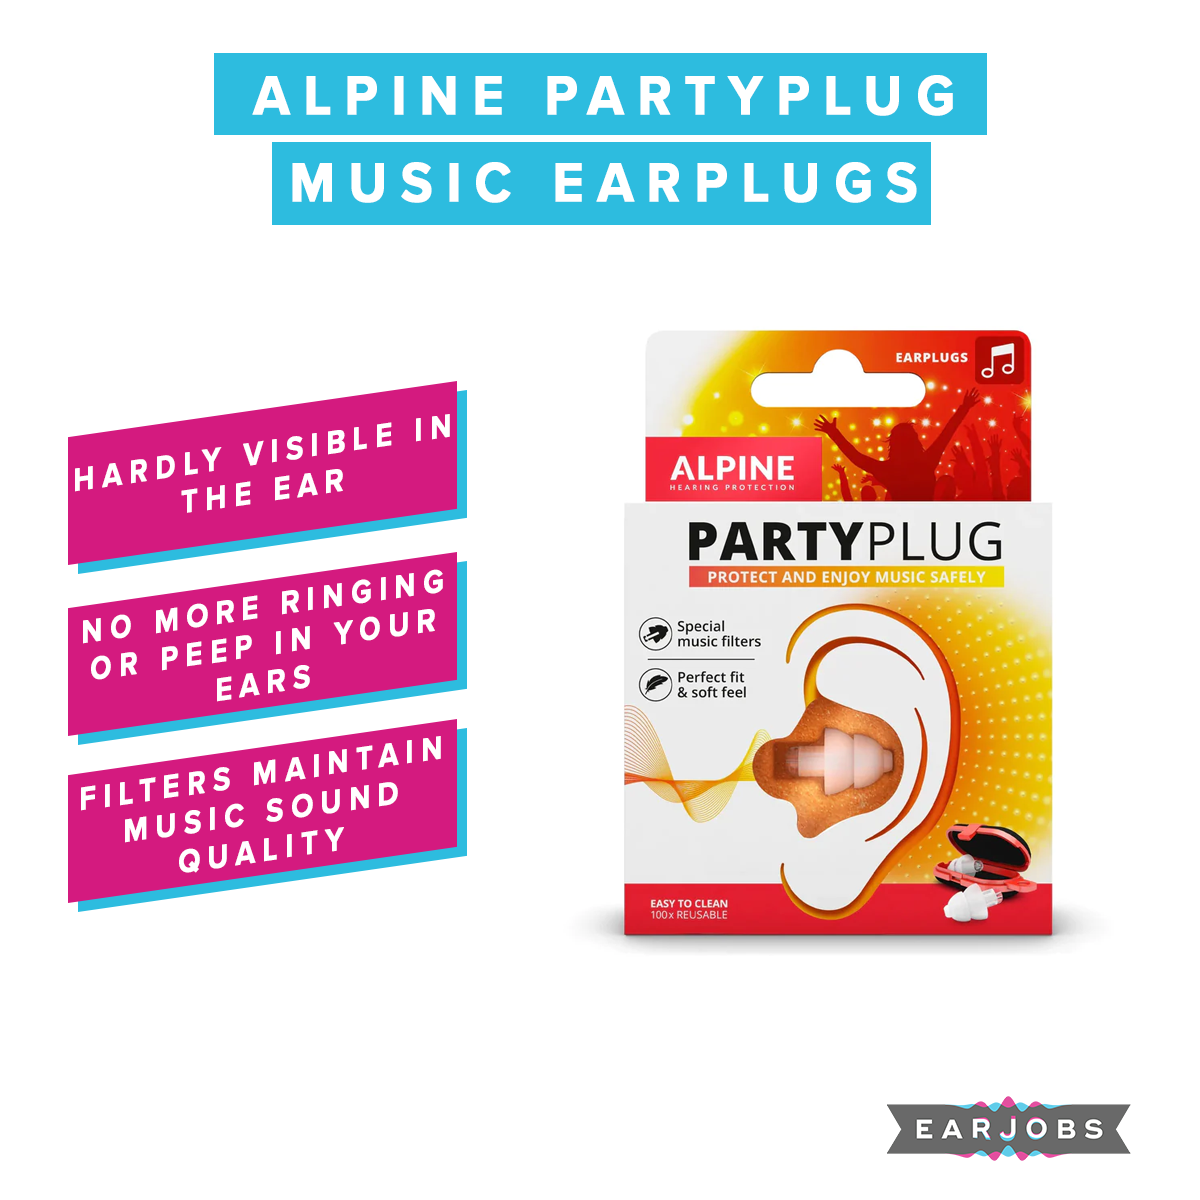 Alpine Partyplug Music Earplugs